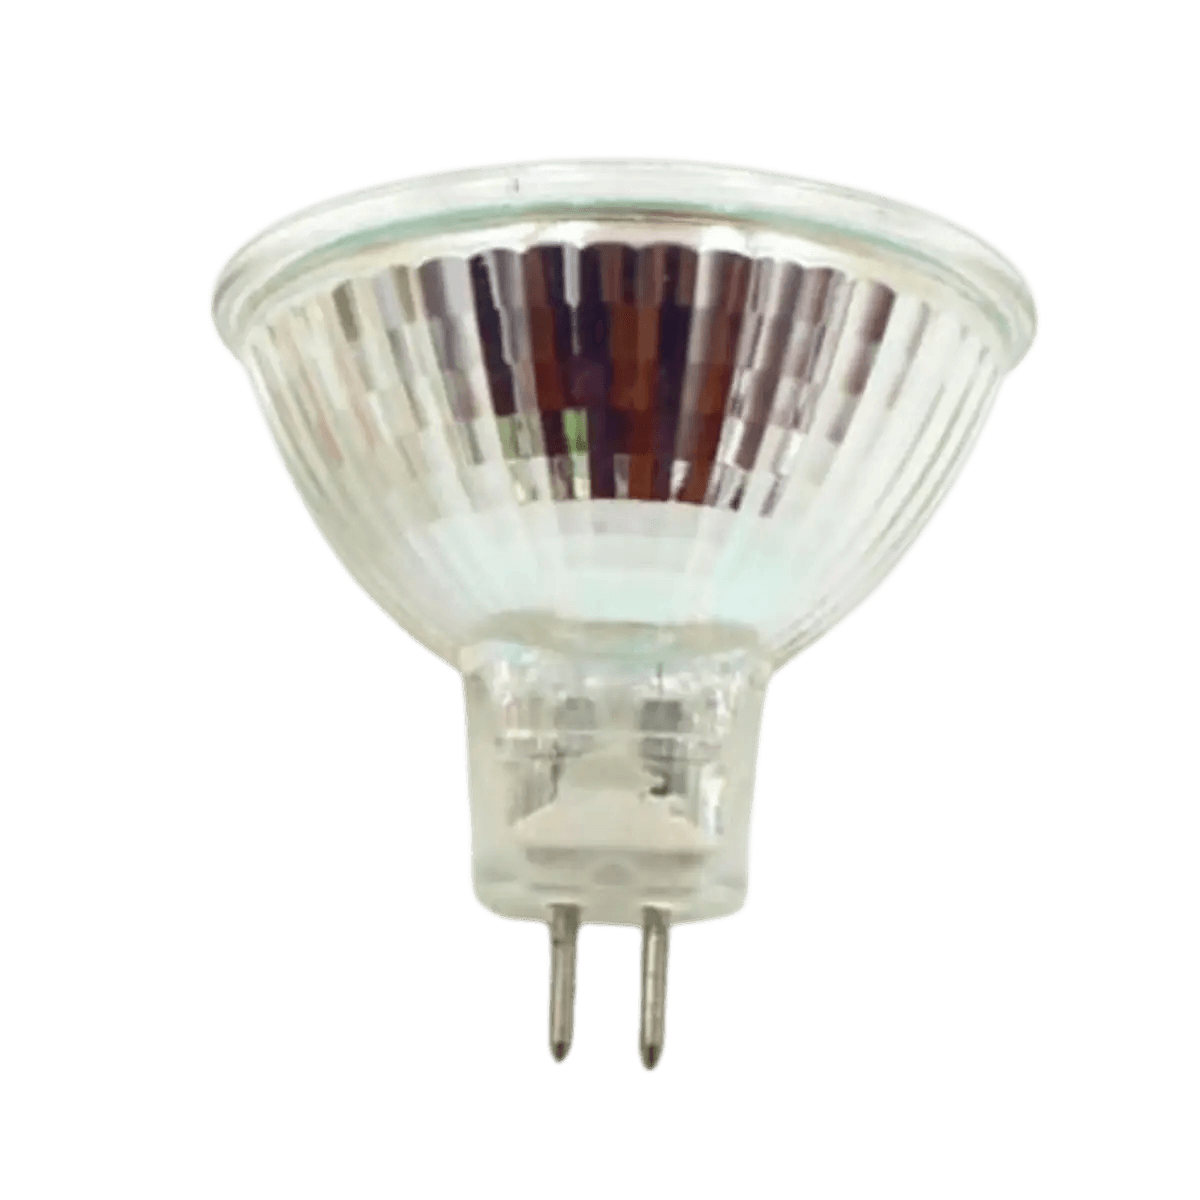 VINBE Lampe halogène spéciale G9 40W pour lampe de four à micro